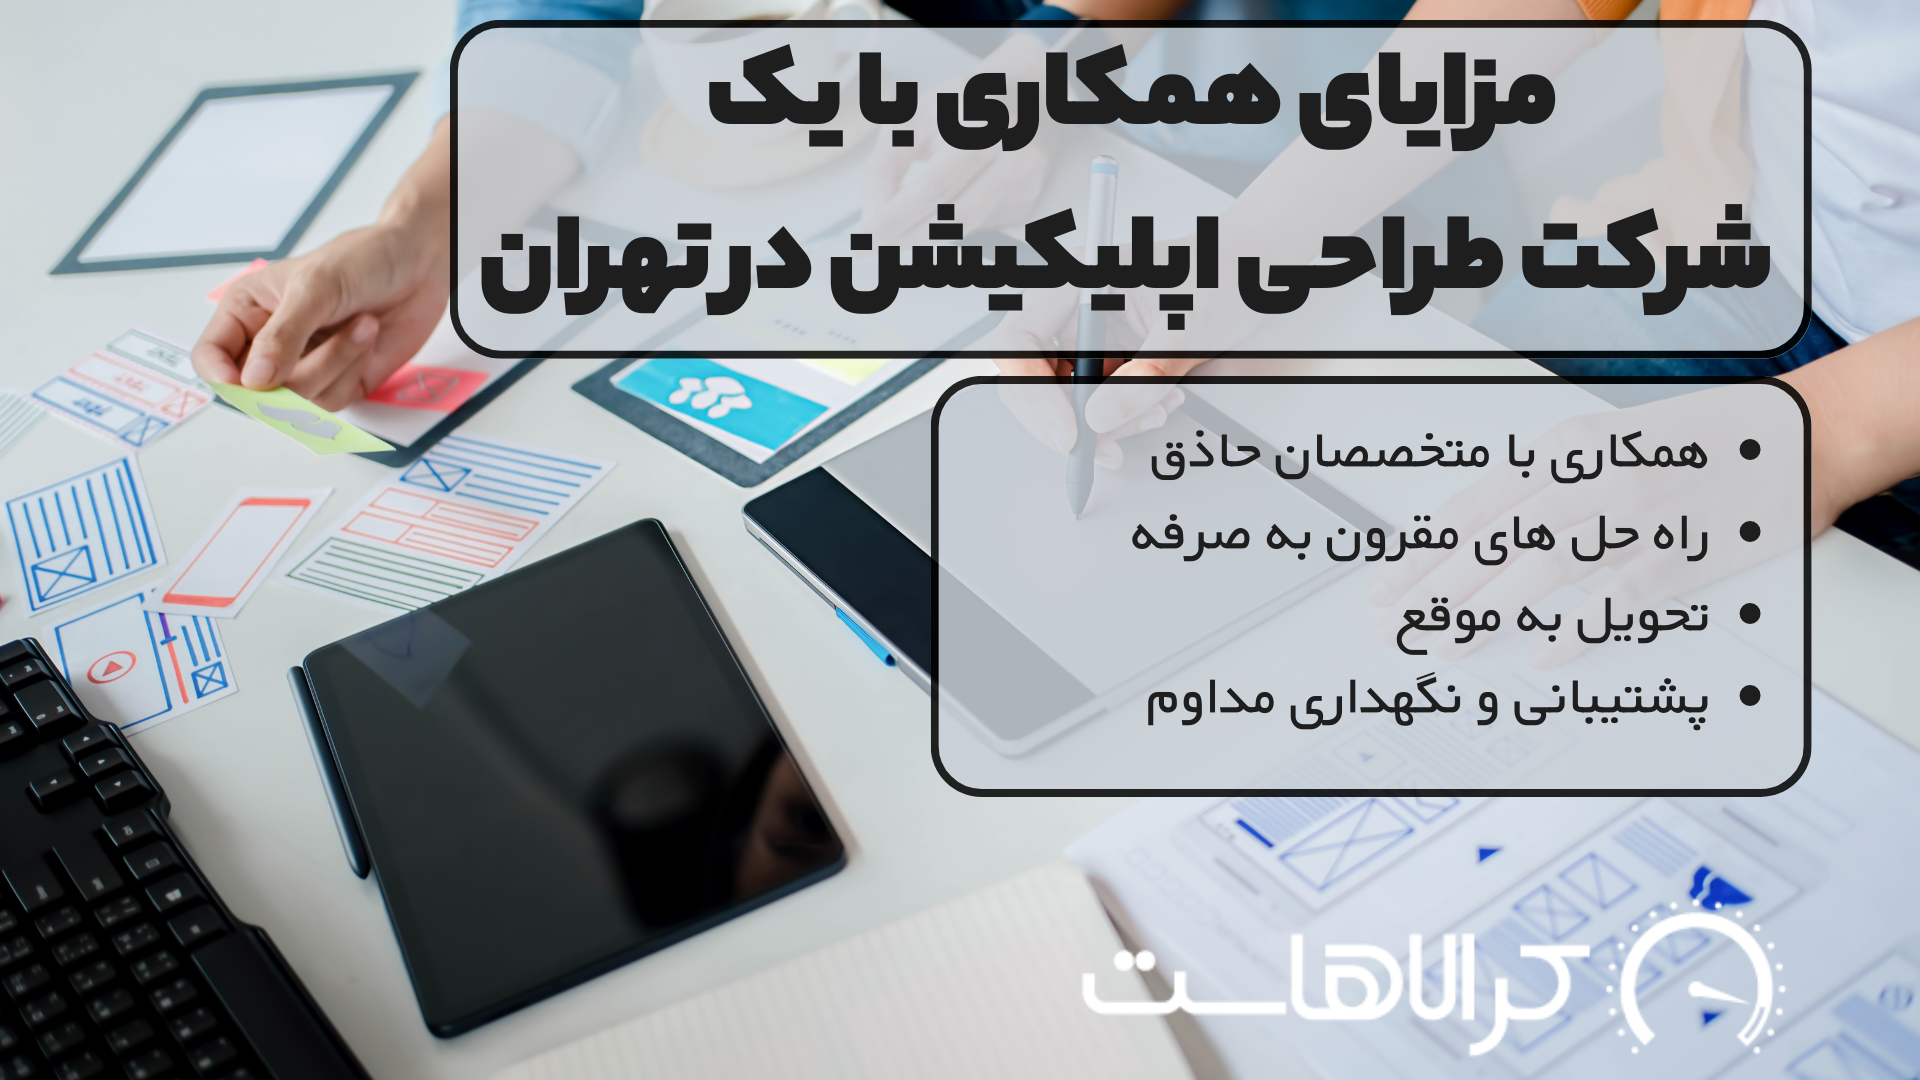 مزایای همکاری با یک شرکت طراحی اپلیکیشن در تهران